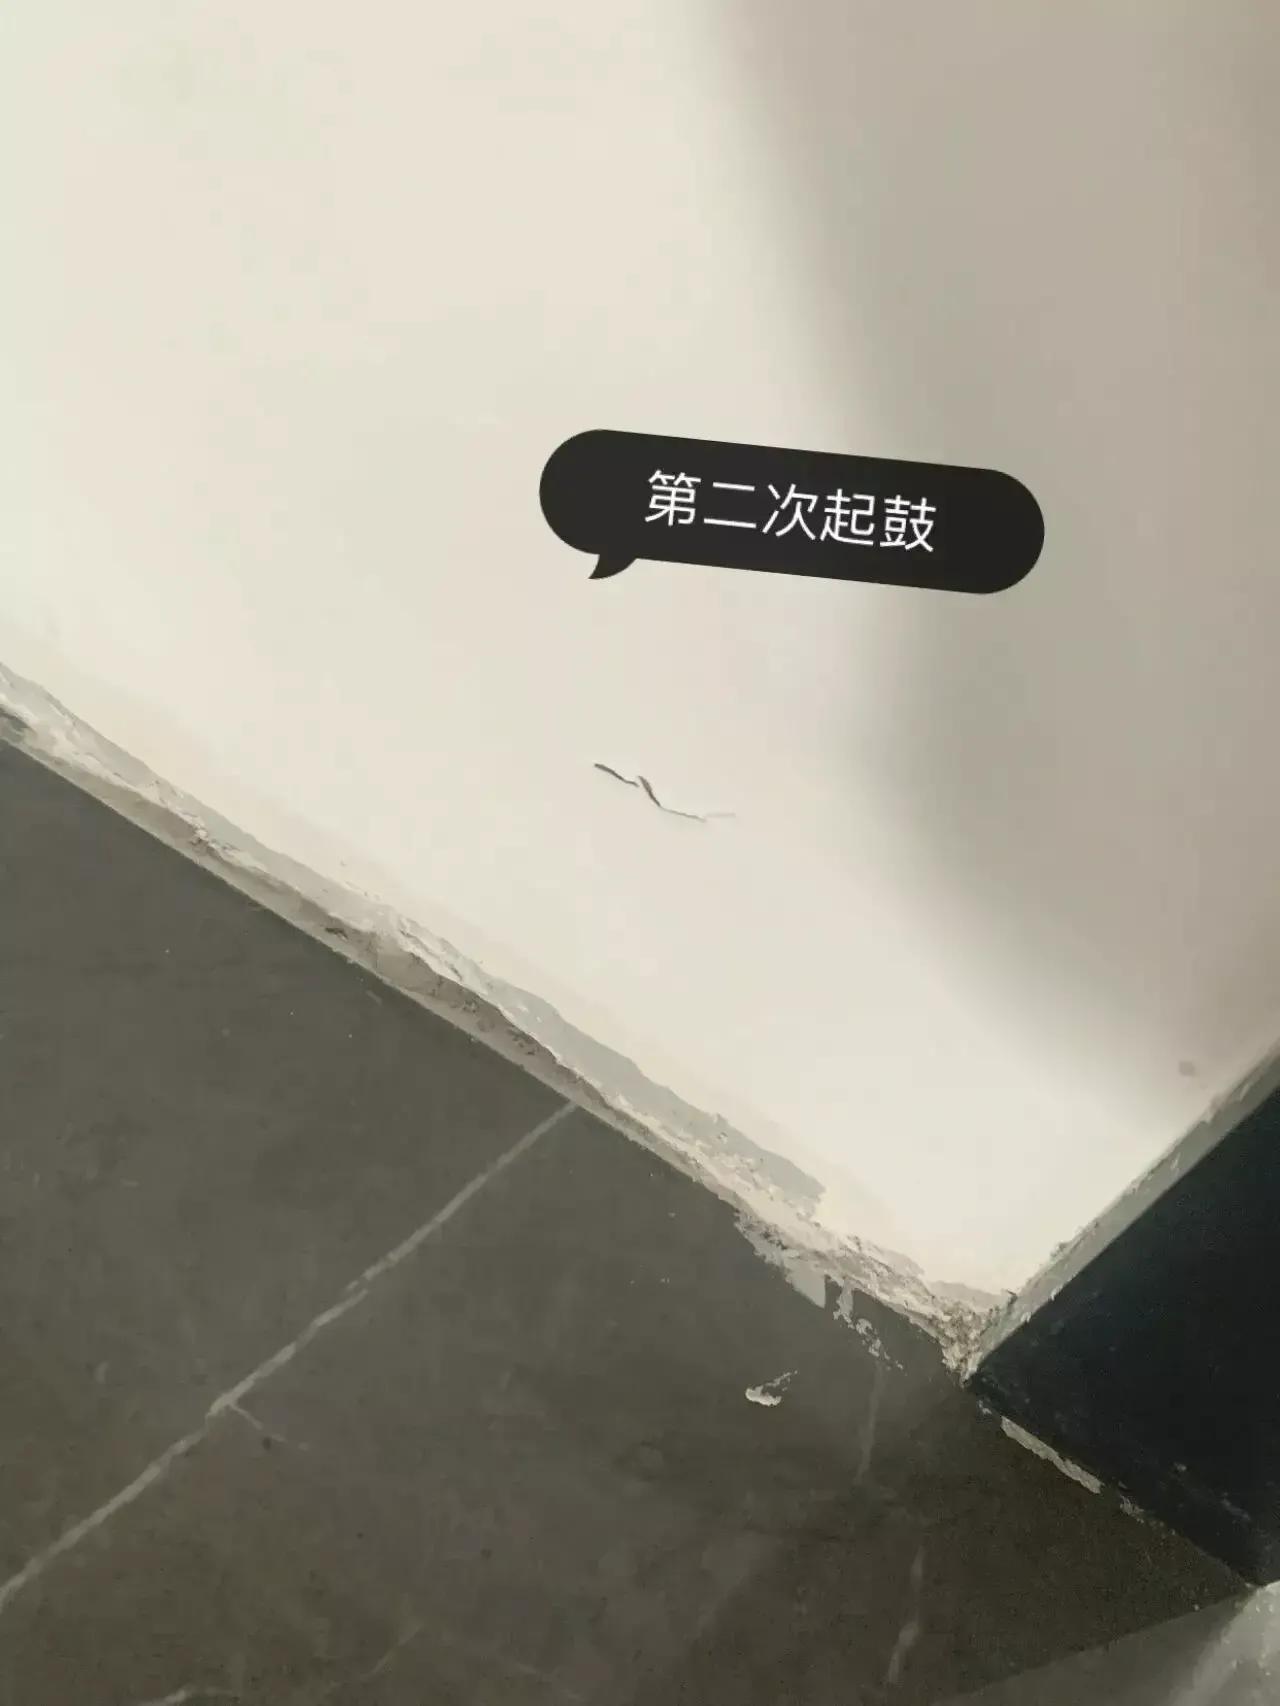 看到卫生间门口漏水，我发现这是无数中国家庭装修的通病